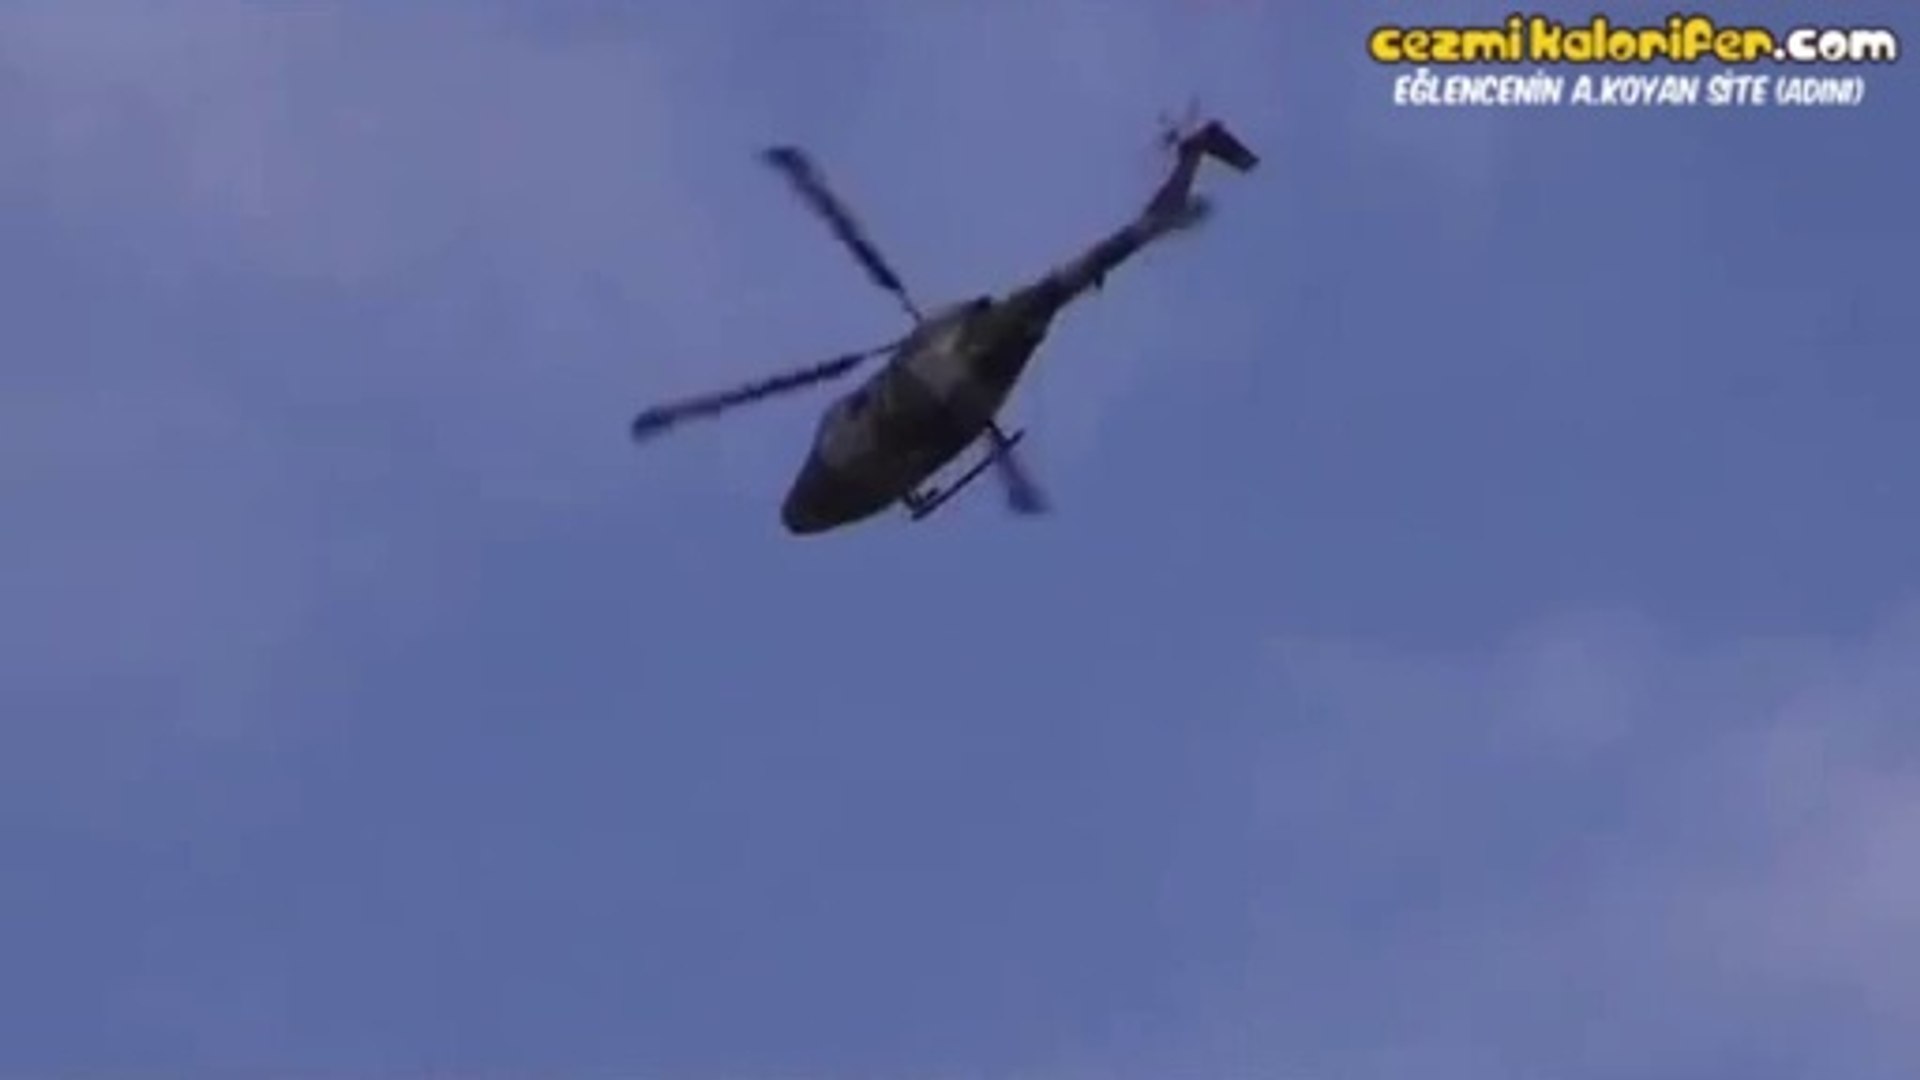 Gerçek Helikopteri Uzaktan Kumandalı Helikopter Gibi Kullanmak